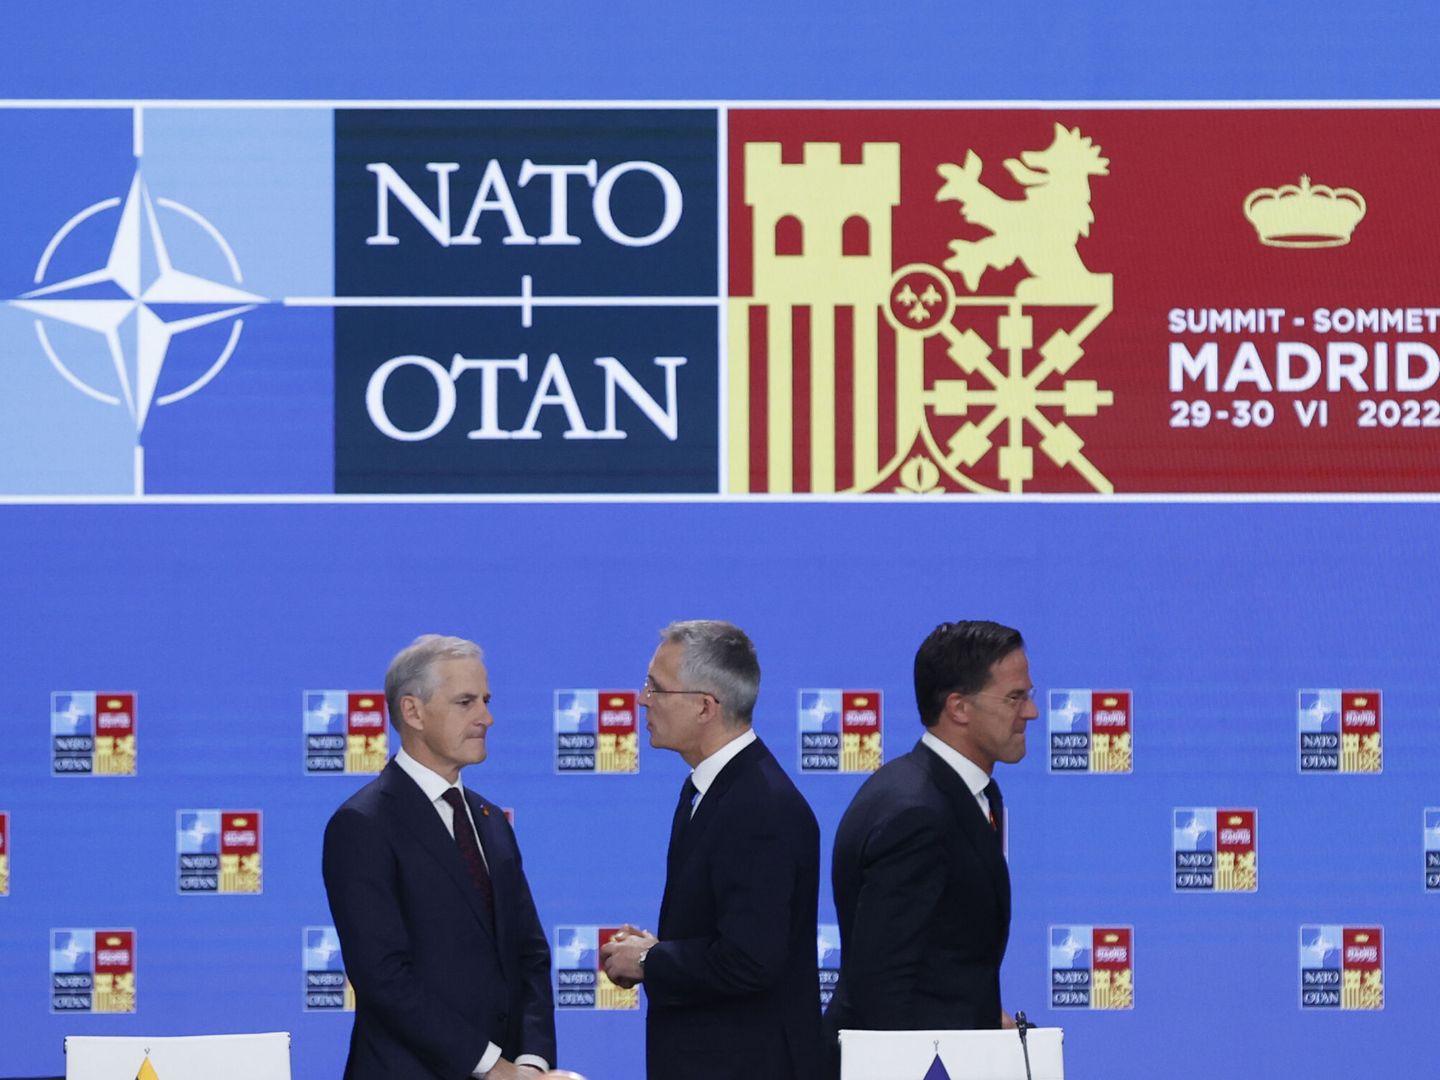 El secretario general de la OTAN, Jens Stoltenberg junto con el primer ministro holandés, Mark Rutte, en la cumbre de la OTAN en el recinto de Ifema, en Madrid. (EFE/Brais Lorenzo)